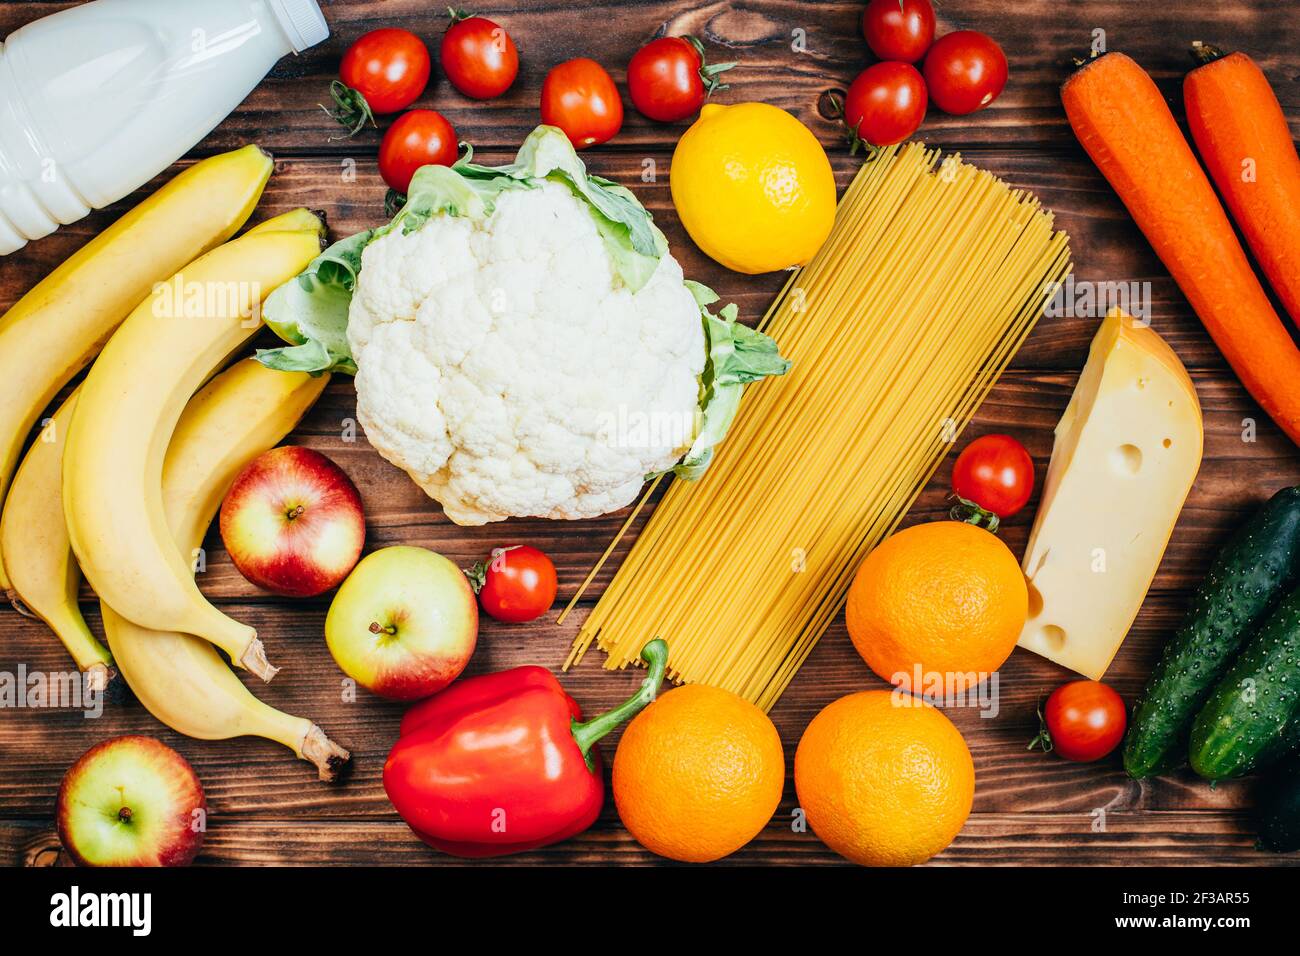 vue de dessus ensemble de nourriture légumes fruits produits laitiers arrière-plan en bois Banque D'Images